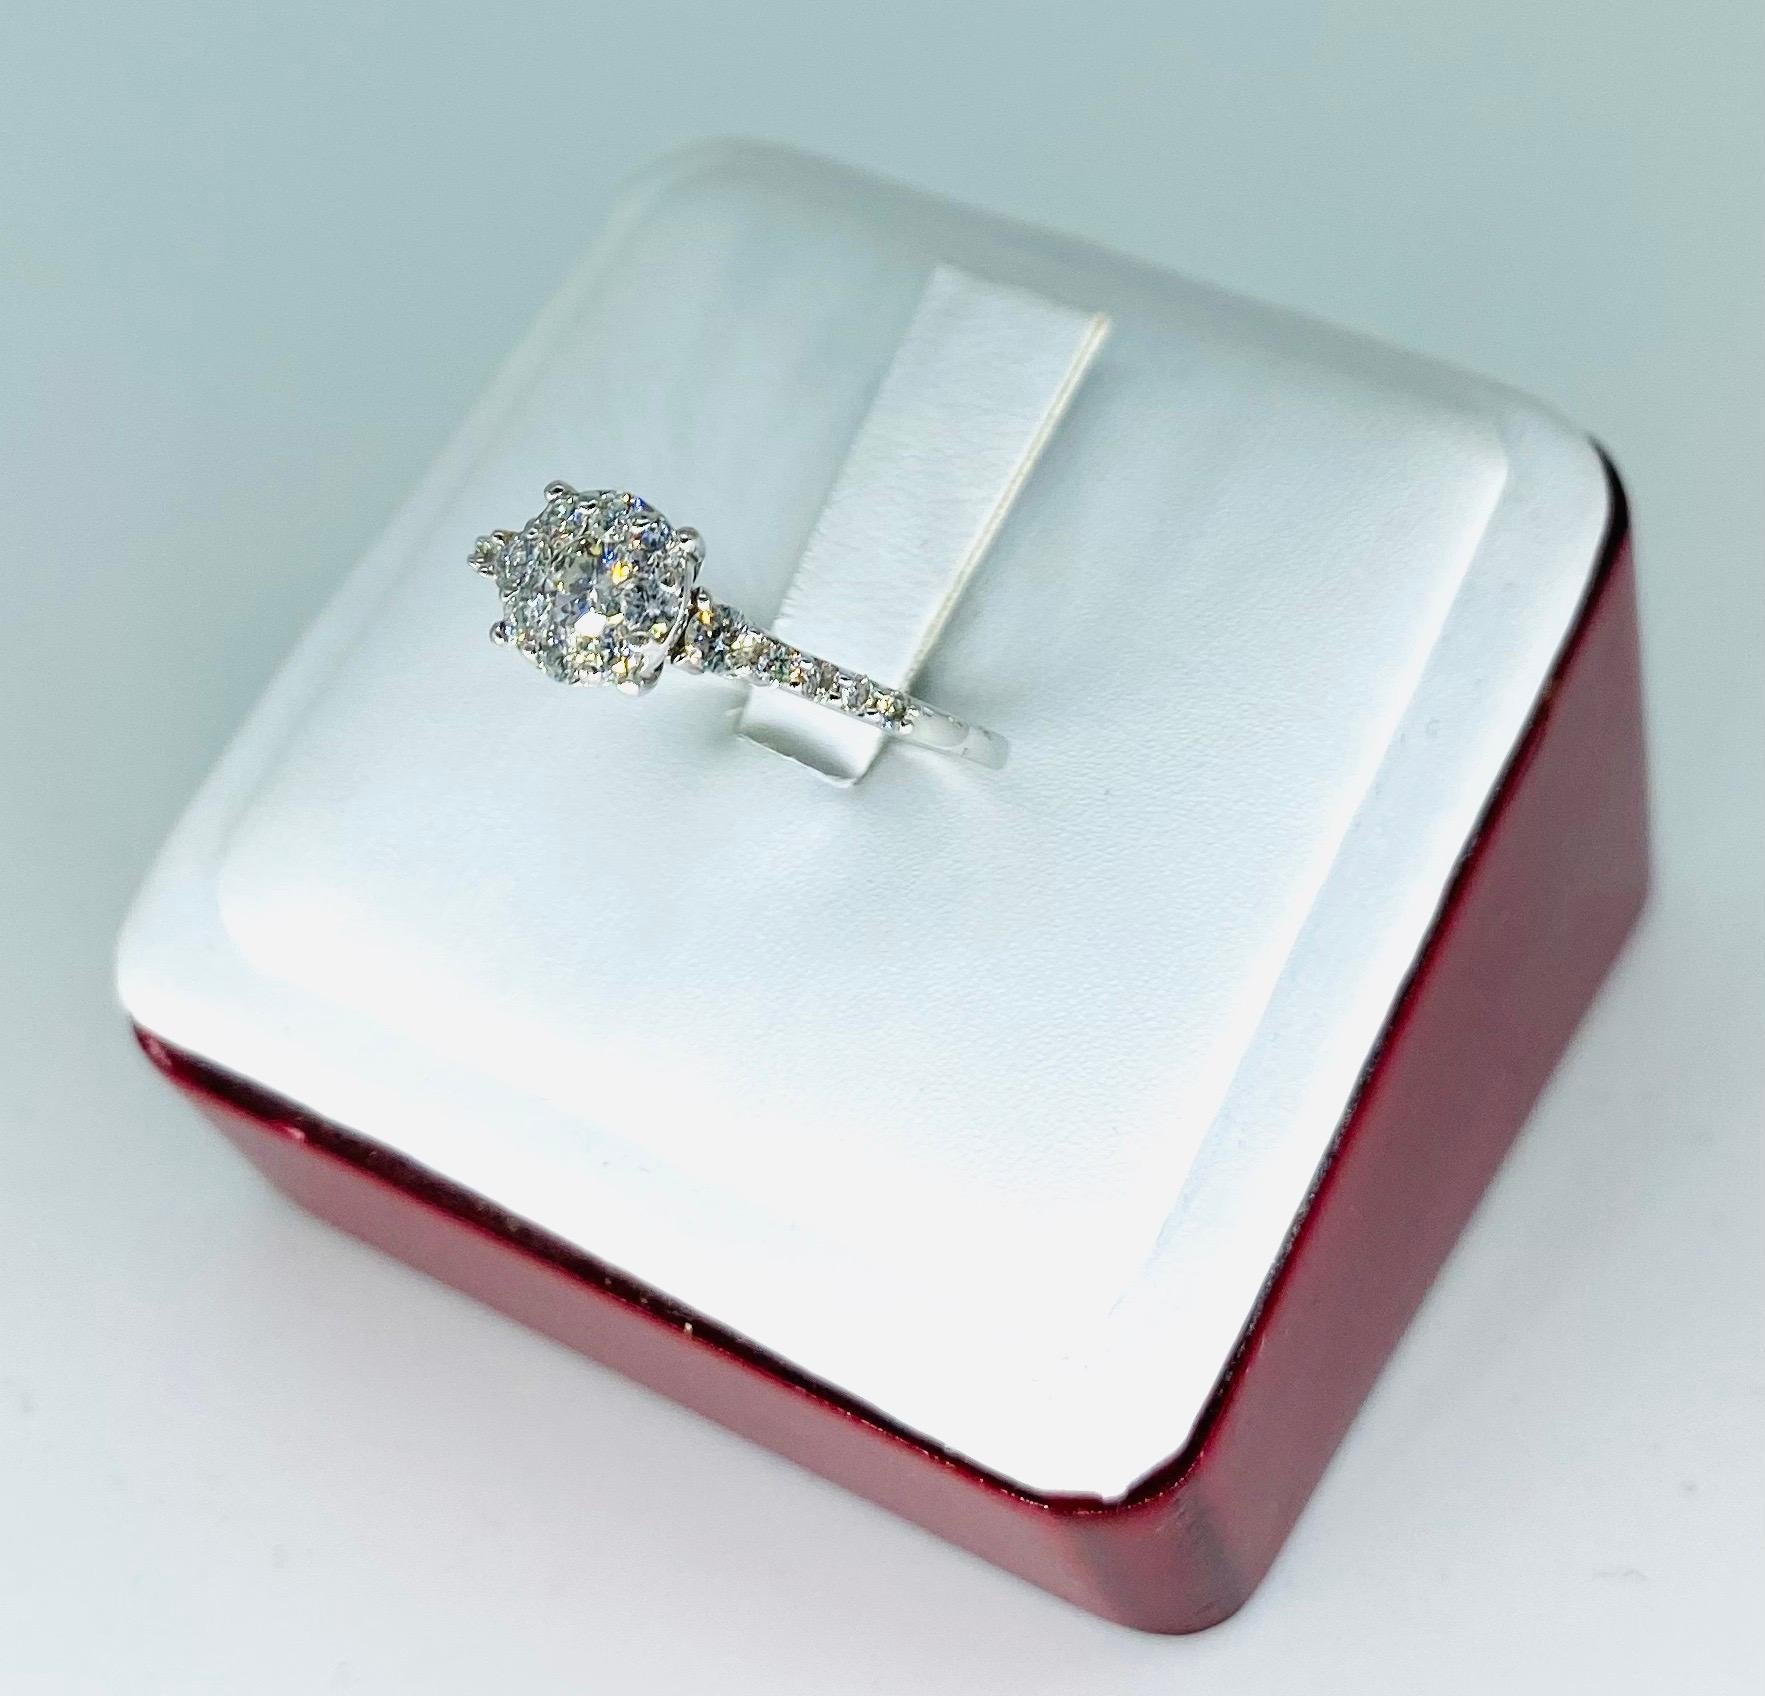 Vintage 1 Karat Diamanten Halo Verlobungsring 14k Weißgold. Der Ring ist sehr beeindruckend mit einem Designer mit PAT # und gestempelt 14k. Sehr hochwertige Diamanten, die bei Lichteinfall funkeln. Das Gesamtgewicht der Diamanten beträgt ca. 1